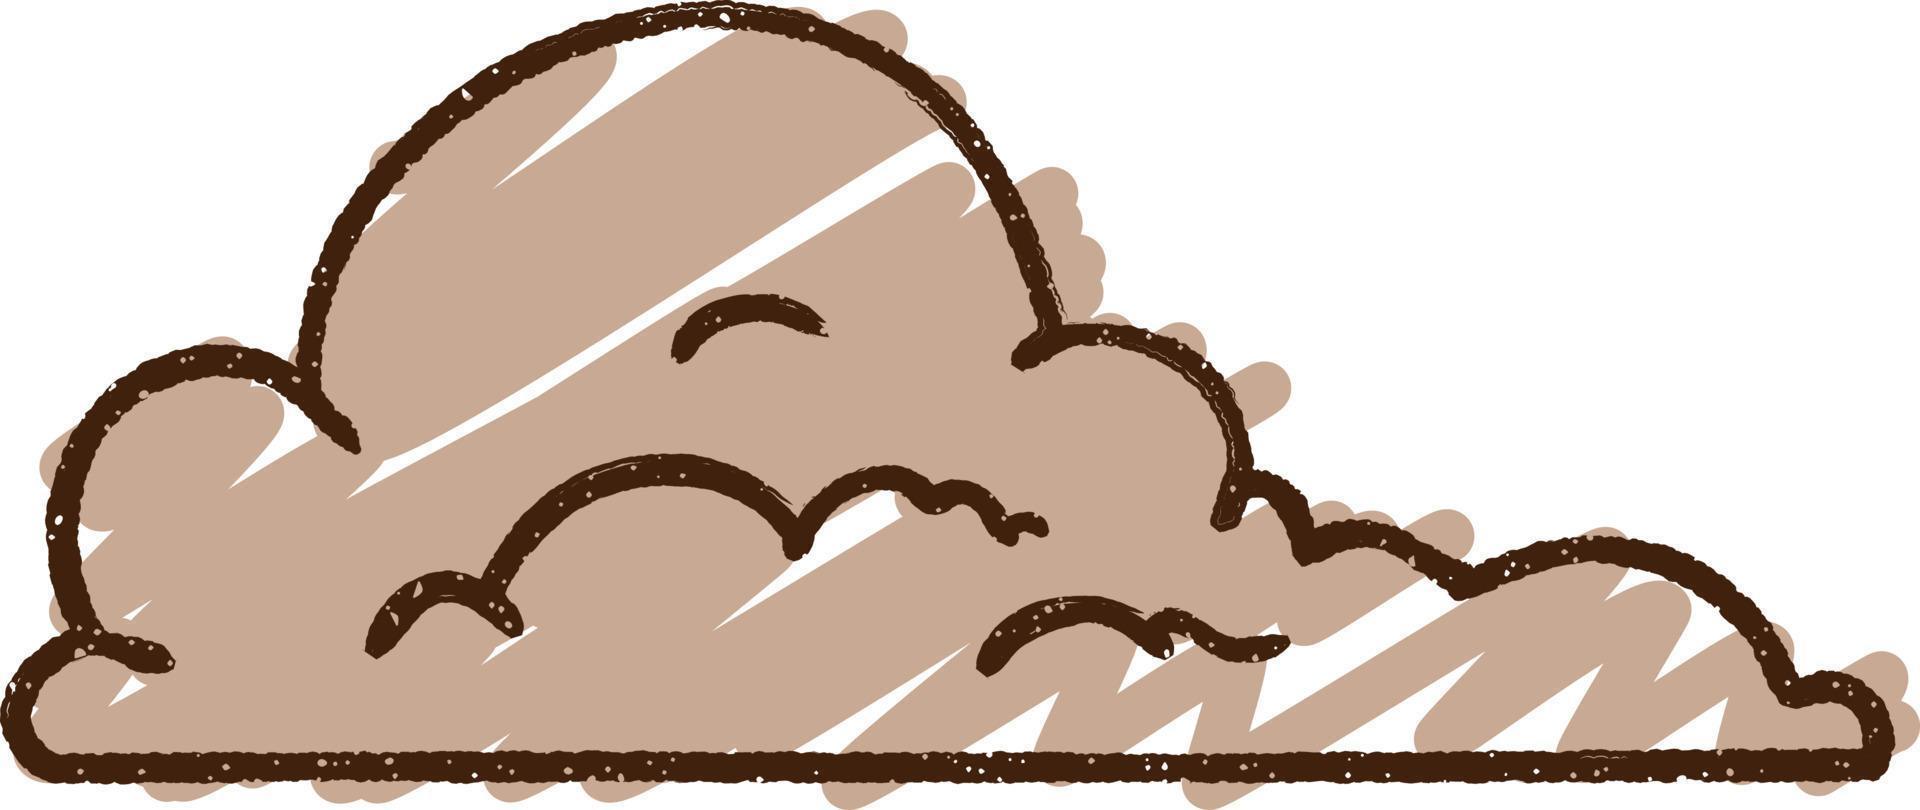 dessin à la craie de nuage d'orage vecteur